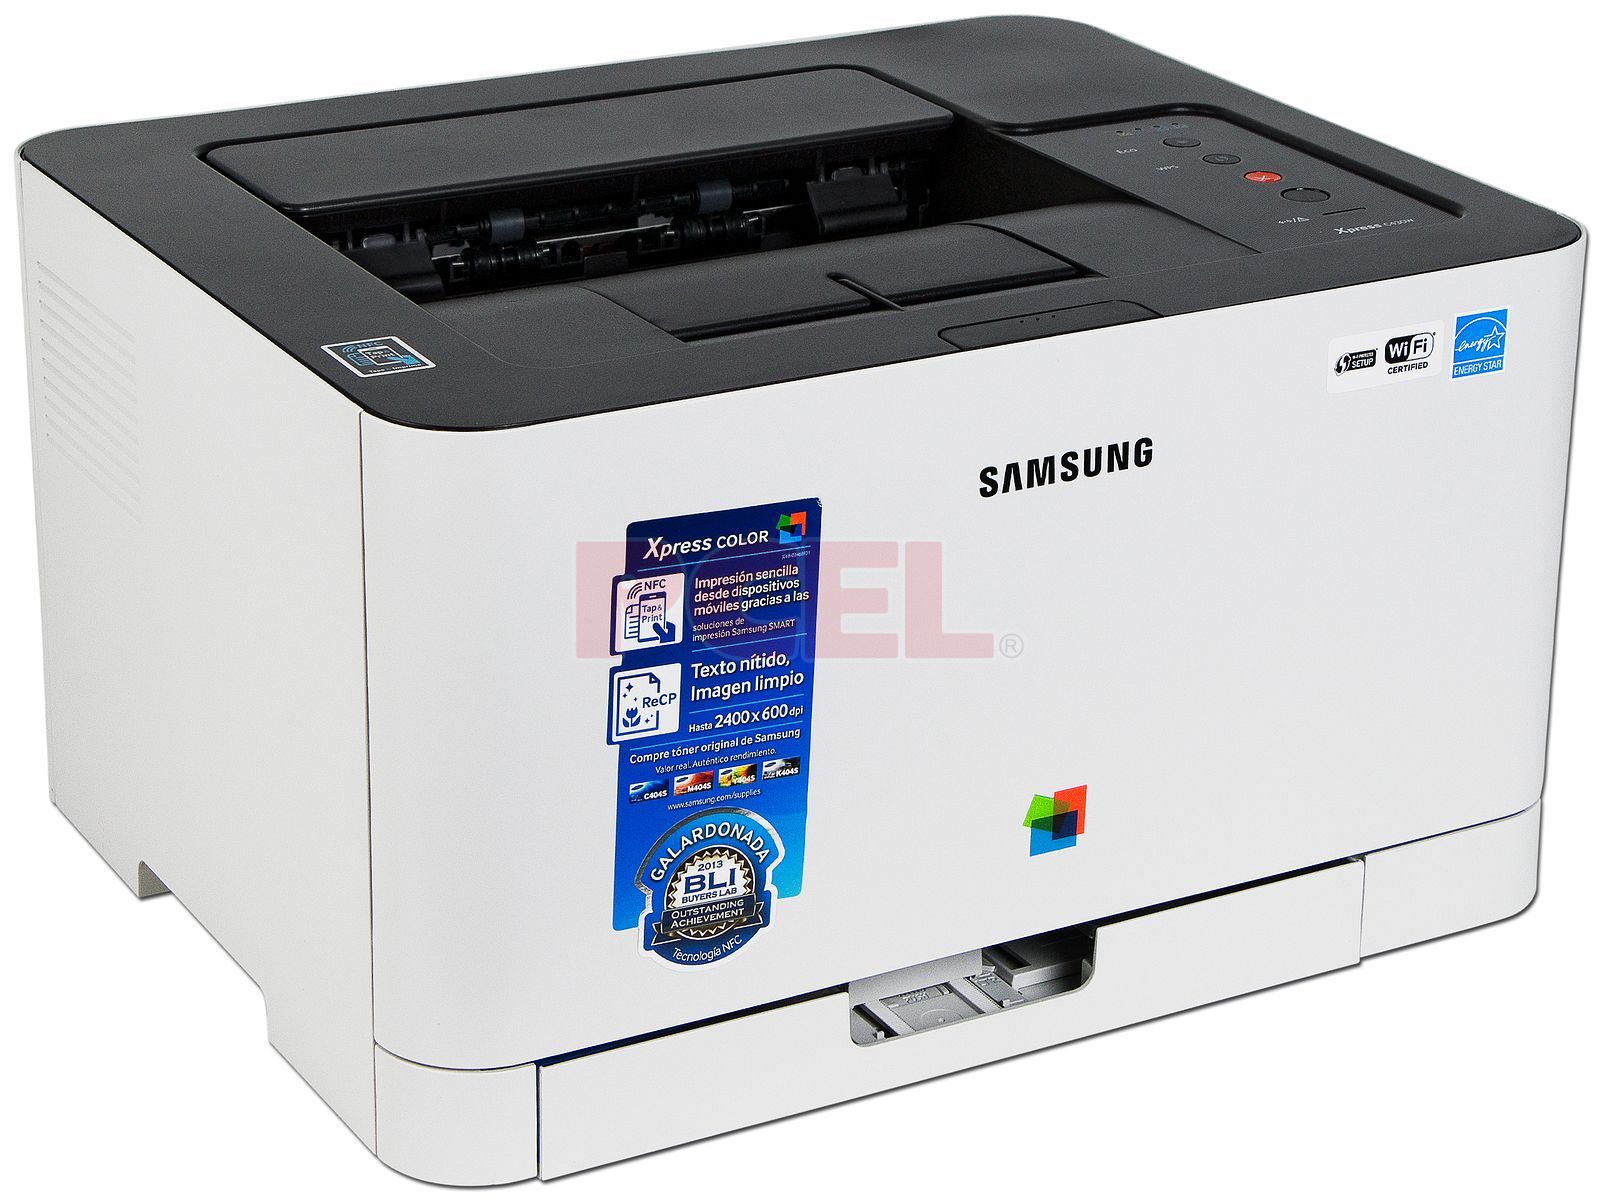 Лазерные принтеры samsung купить. Samsung Xpress SL-c430. Принтер самсунг 2400. Samsung SL-c406. Samsung Xpress c430w красная лампочка.